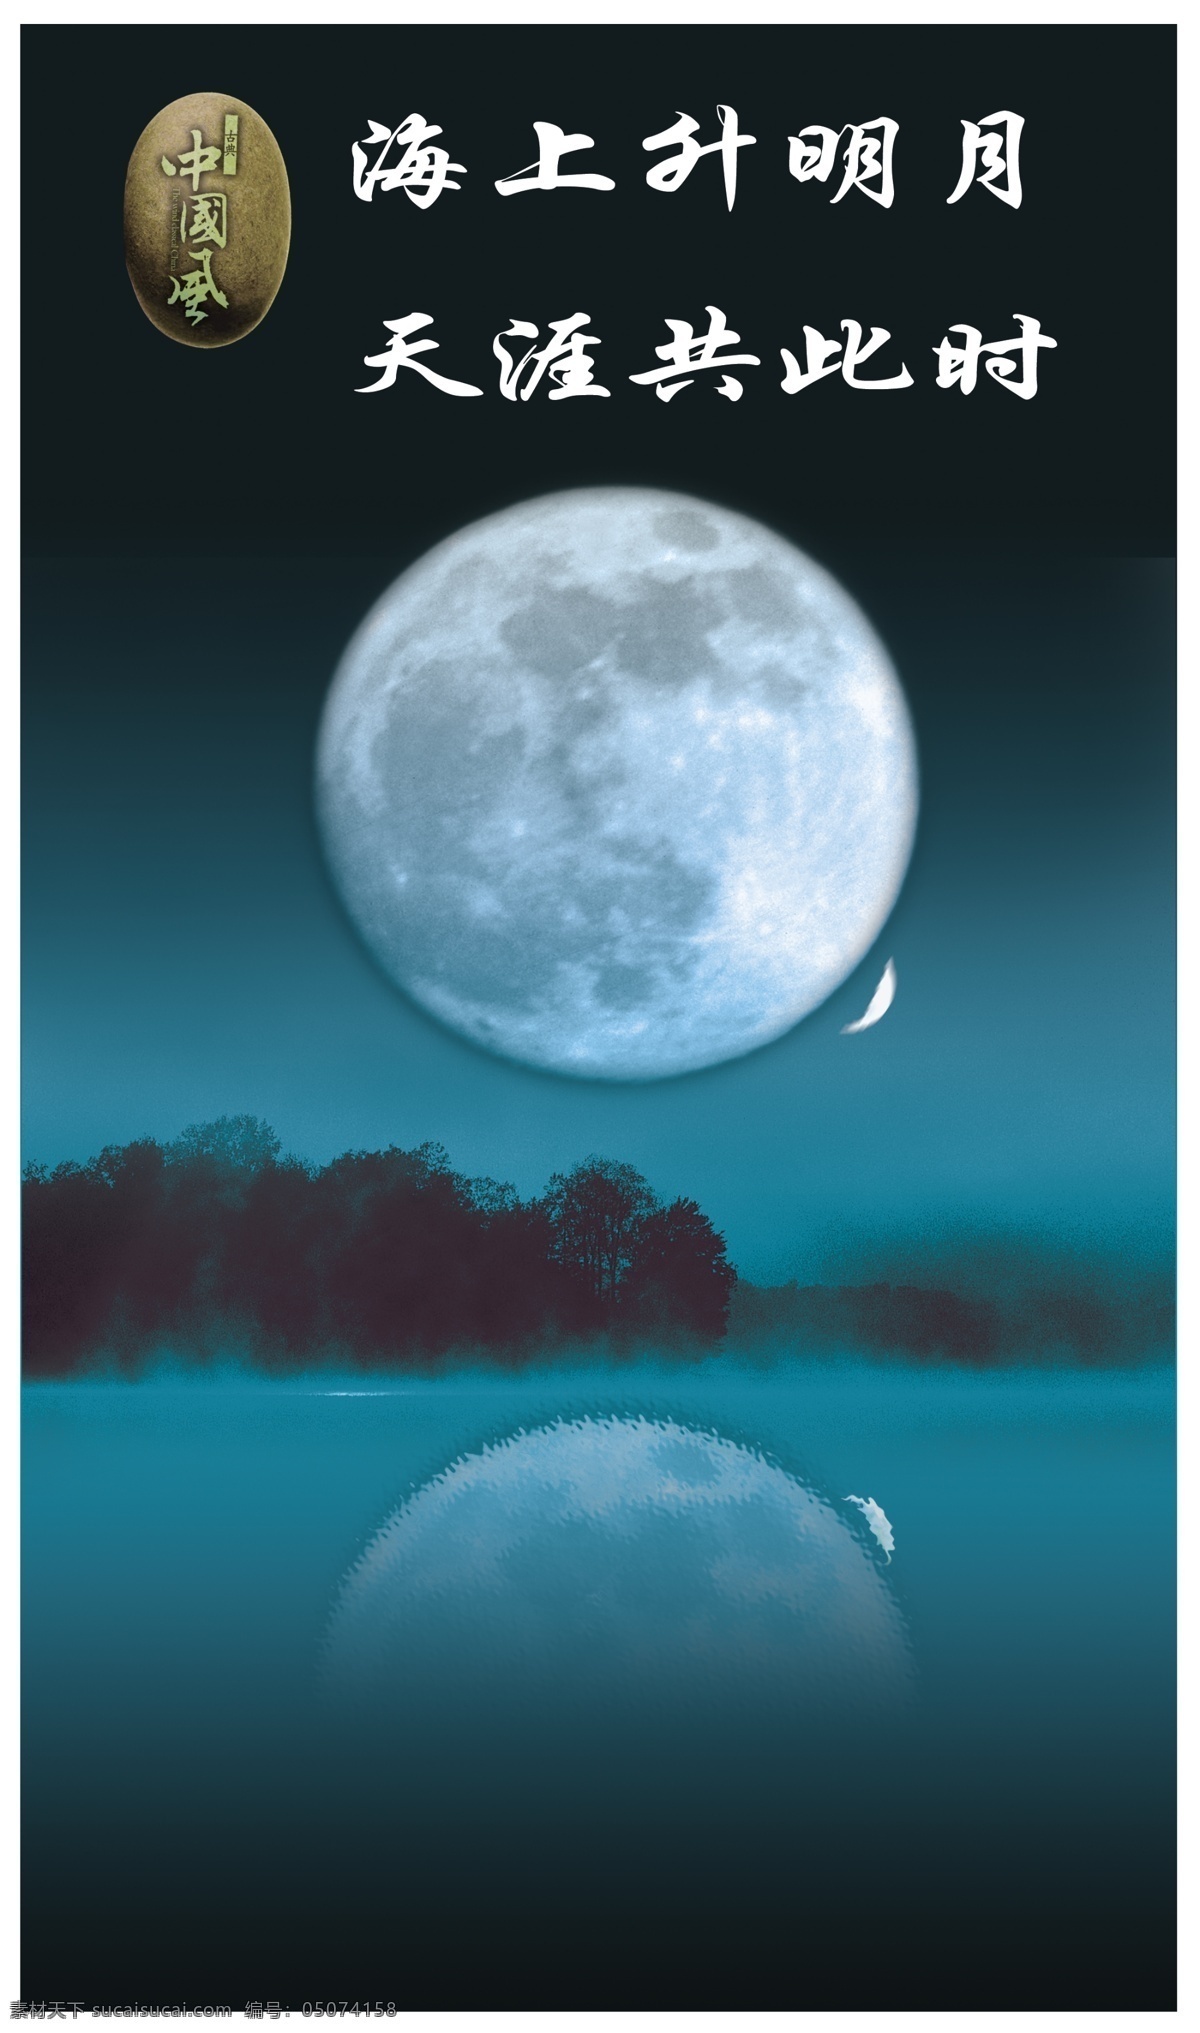 海上升明月 天涯共此时 绝美夜色图 月亮 月色 夜色 倒影 绝美 月球 自然景观 自然风光 绝美月色图 设计图库 节日素材 中秋节 源文件库